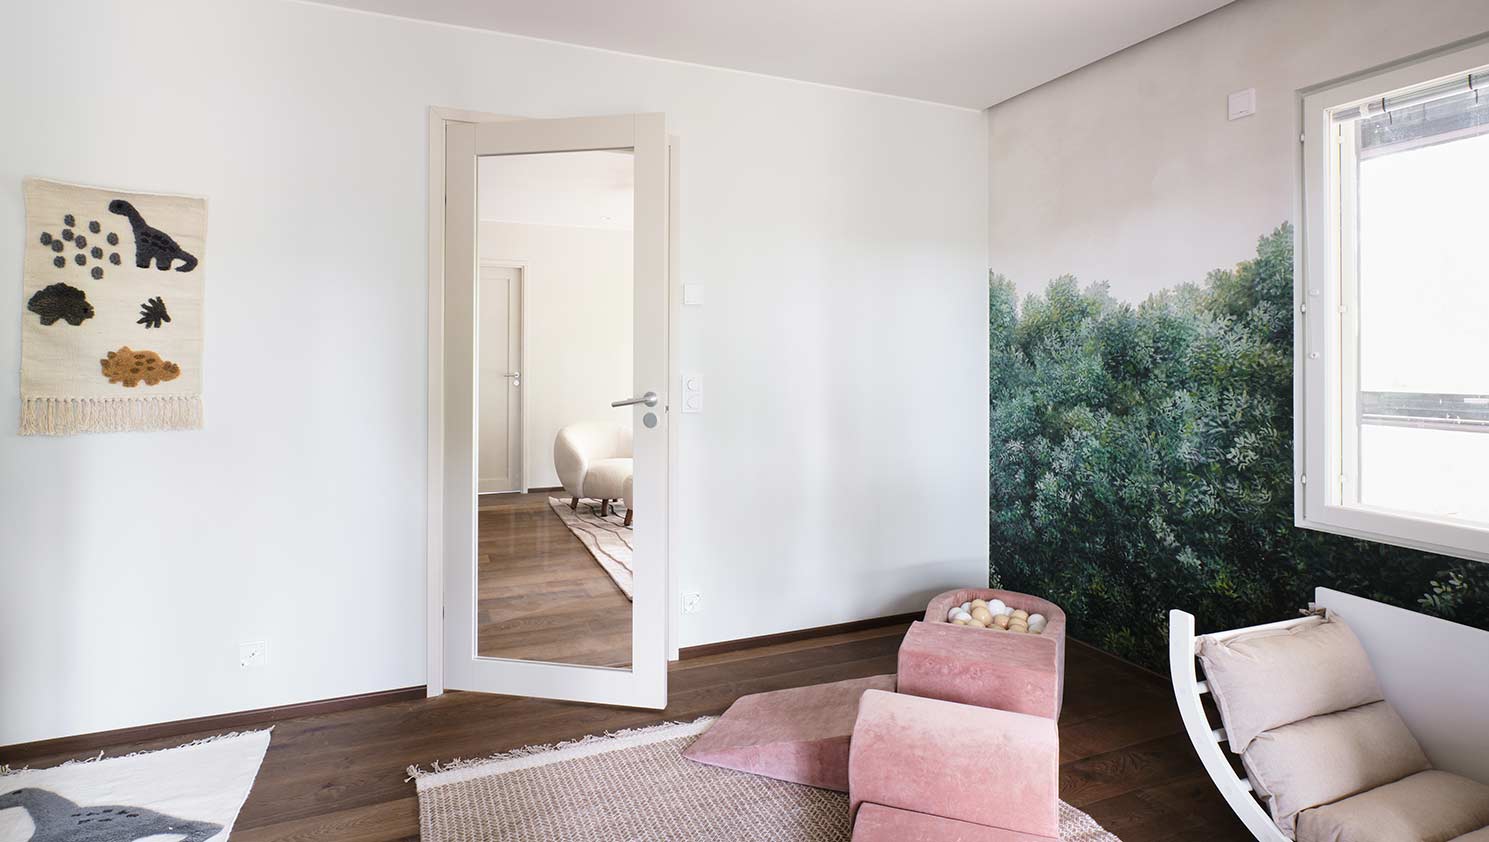 Swedoor durvis ar slēptajām eņģēm pilnveido dabas iedvesmotu mājokli Lovīsas (Loviisa) dzīvojamo māju izstādē 